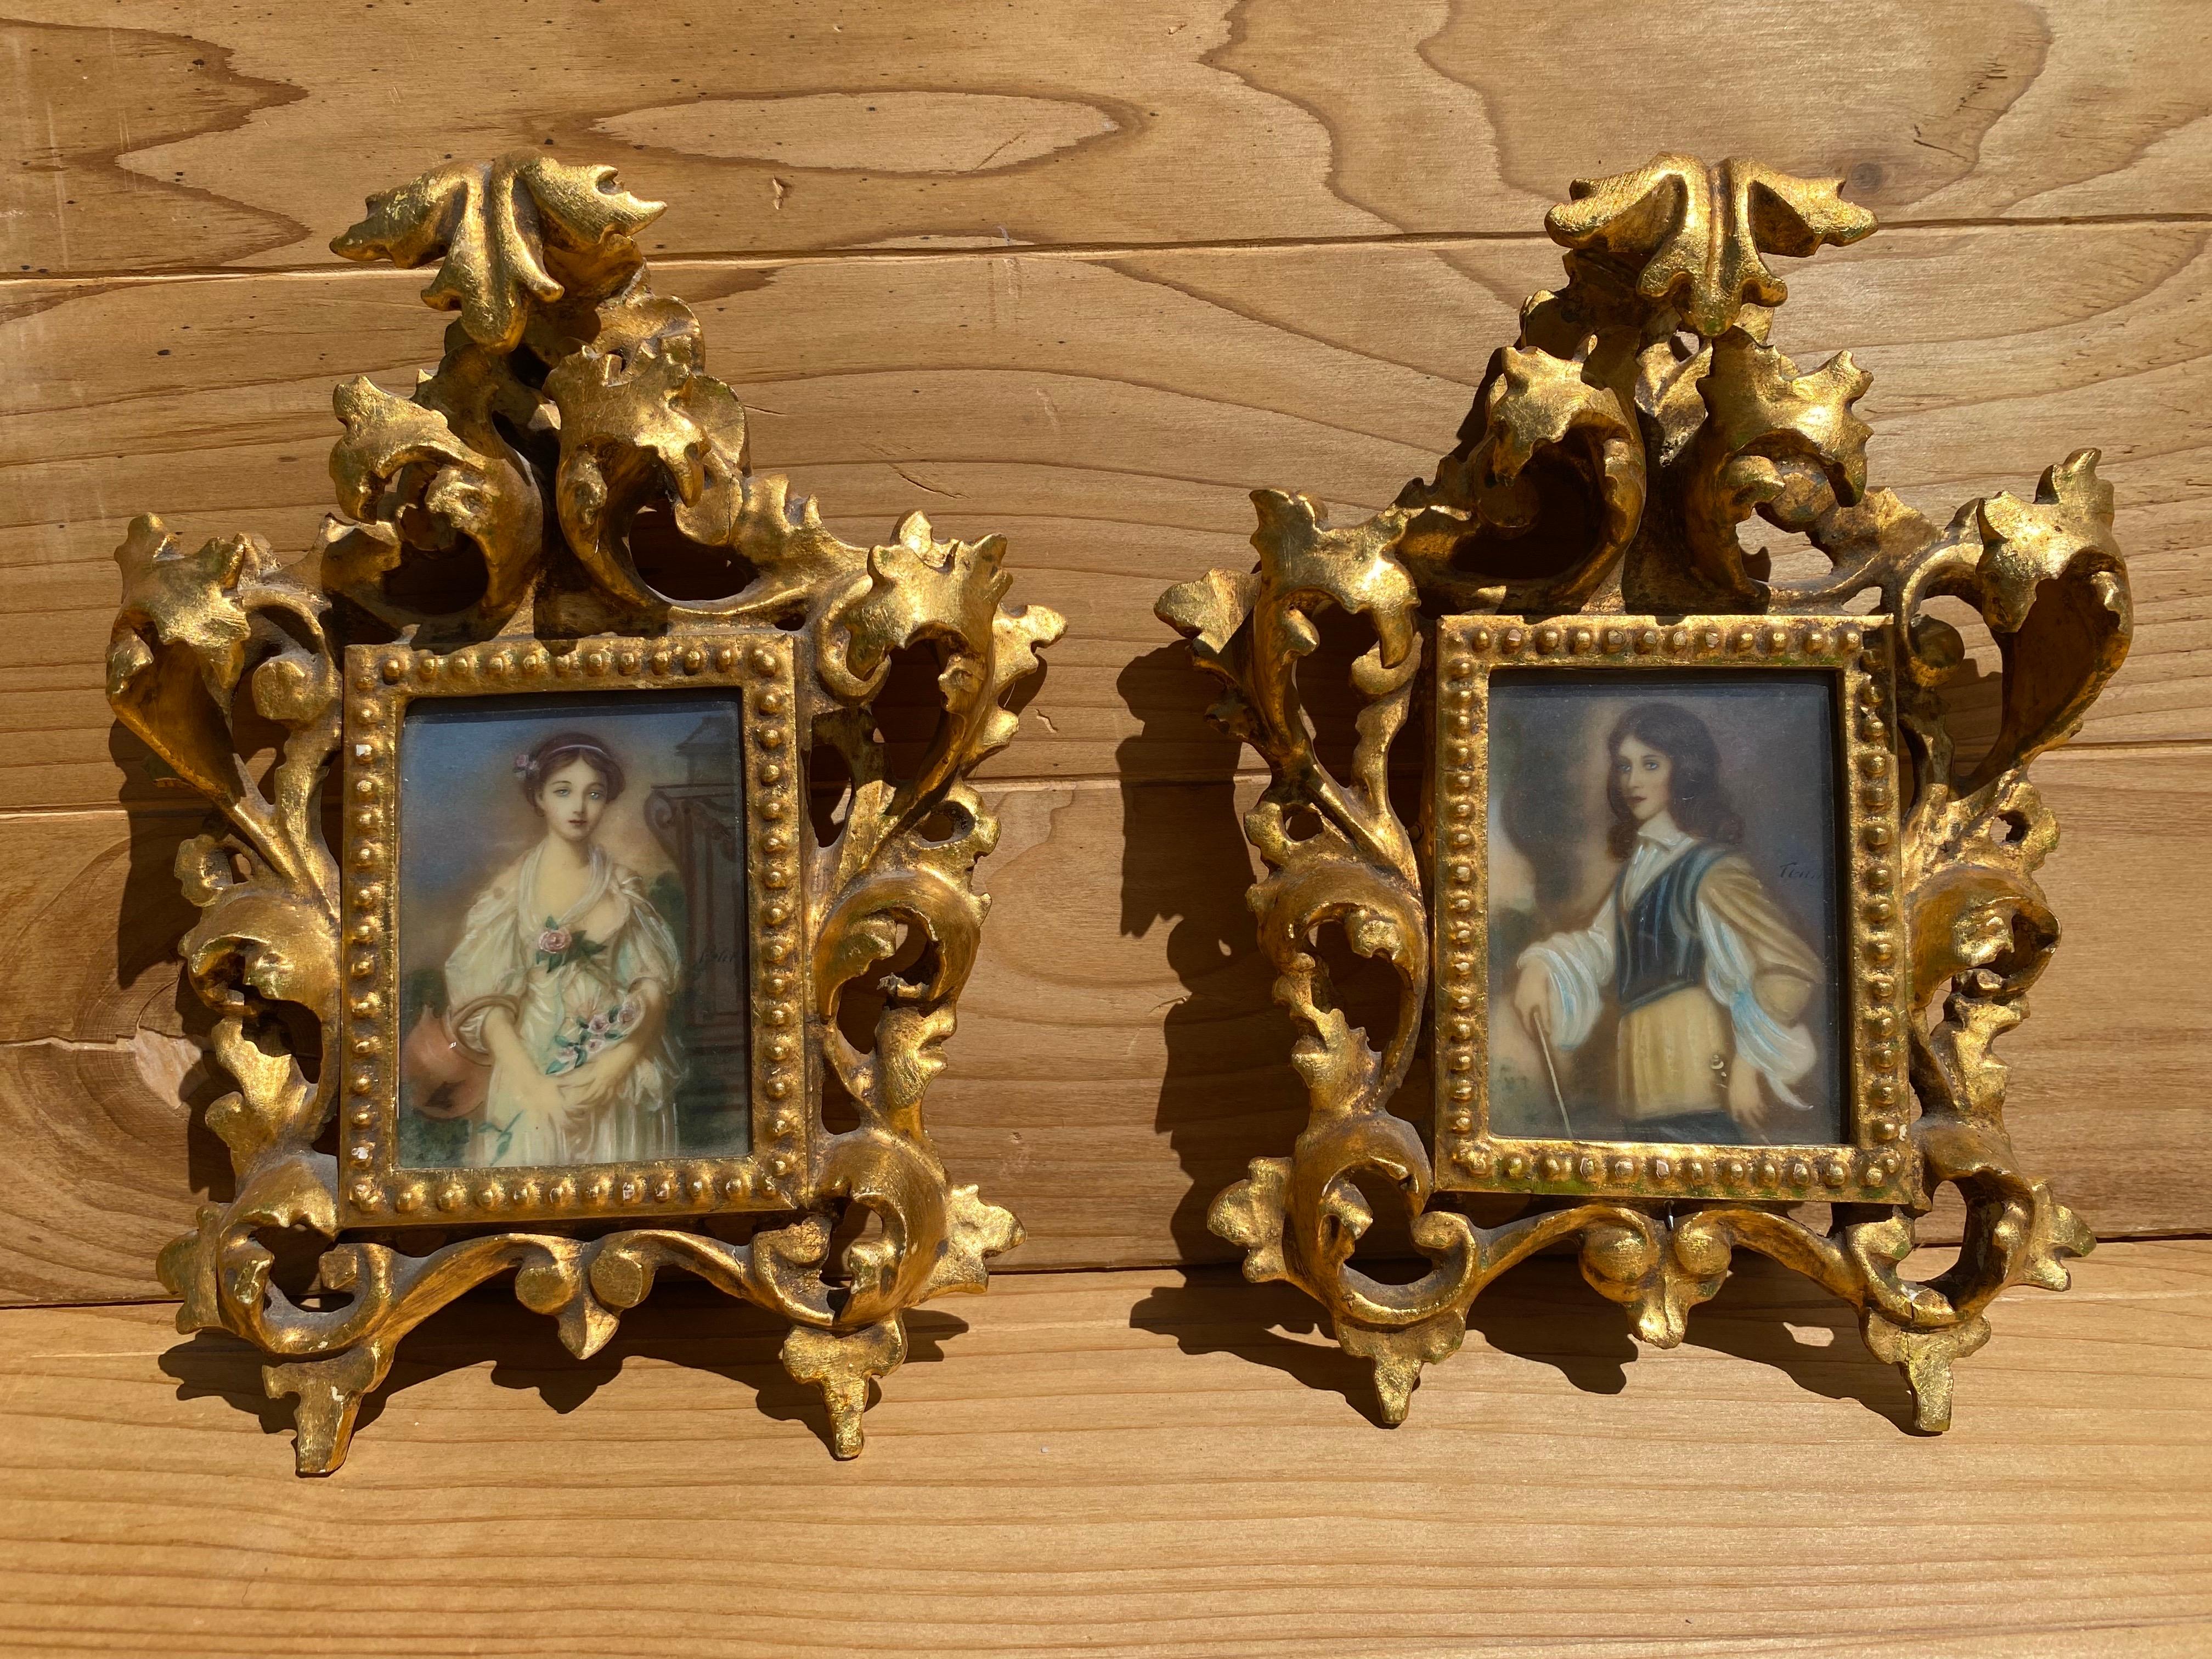 Plaque de portrait miniature victorienne en porcelaine peinte à la main dans un cadre sculpté.  Cadre en bois doré orné - Lot de 2 

Datant de l'époque victorienne, ces exquis portraits miniatures originaux sont peints à la main sur une plaque de